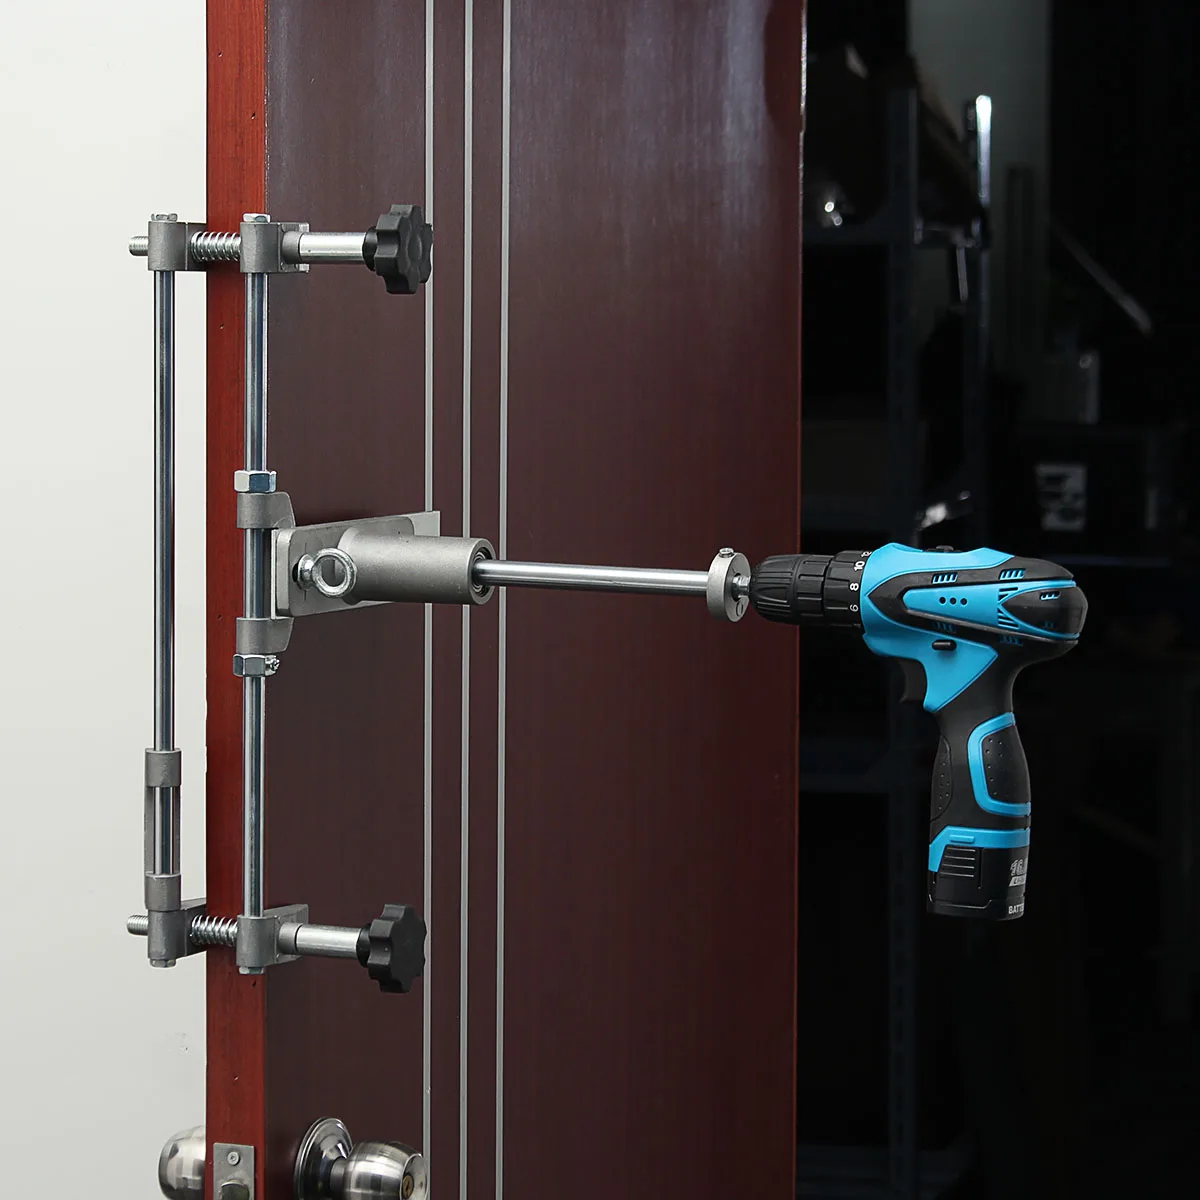 Дверной замок, приспособление, джиг, набор с гаечным ключом, инструмент для обустройства дома, деревянный дверной перфоратор, слесарные принадлежности